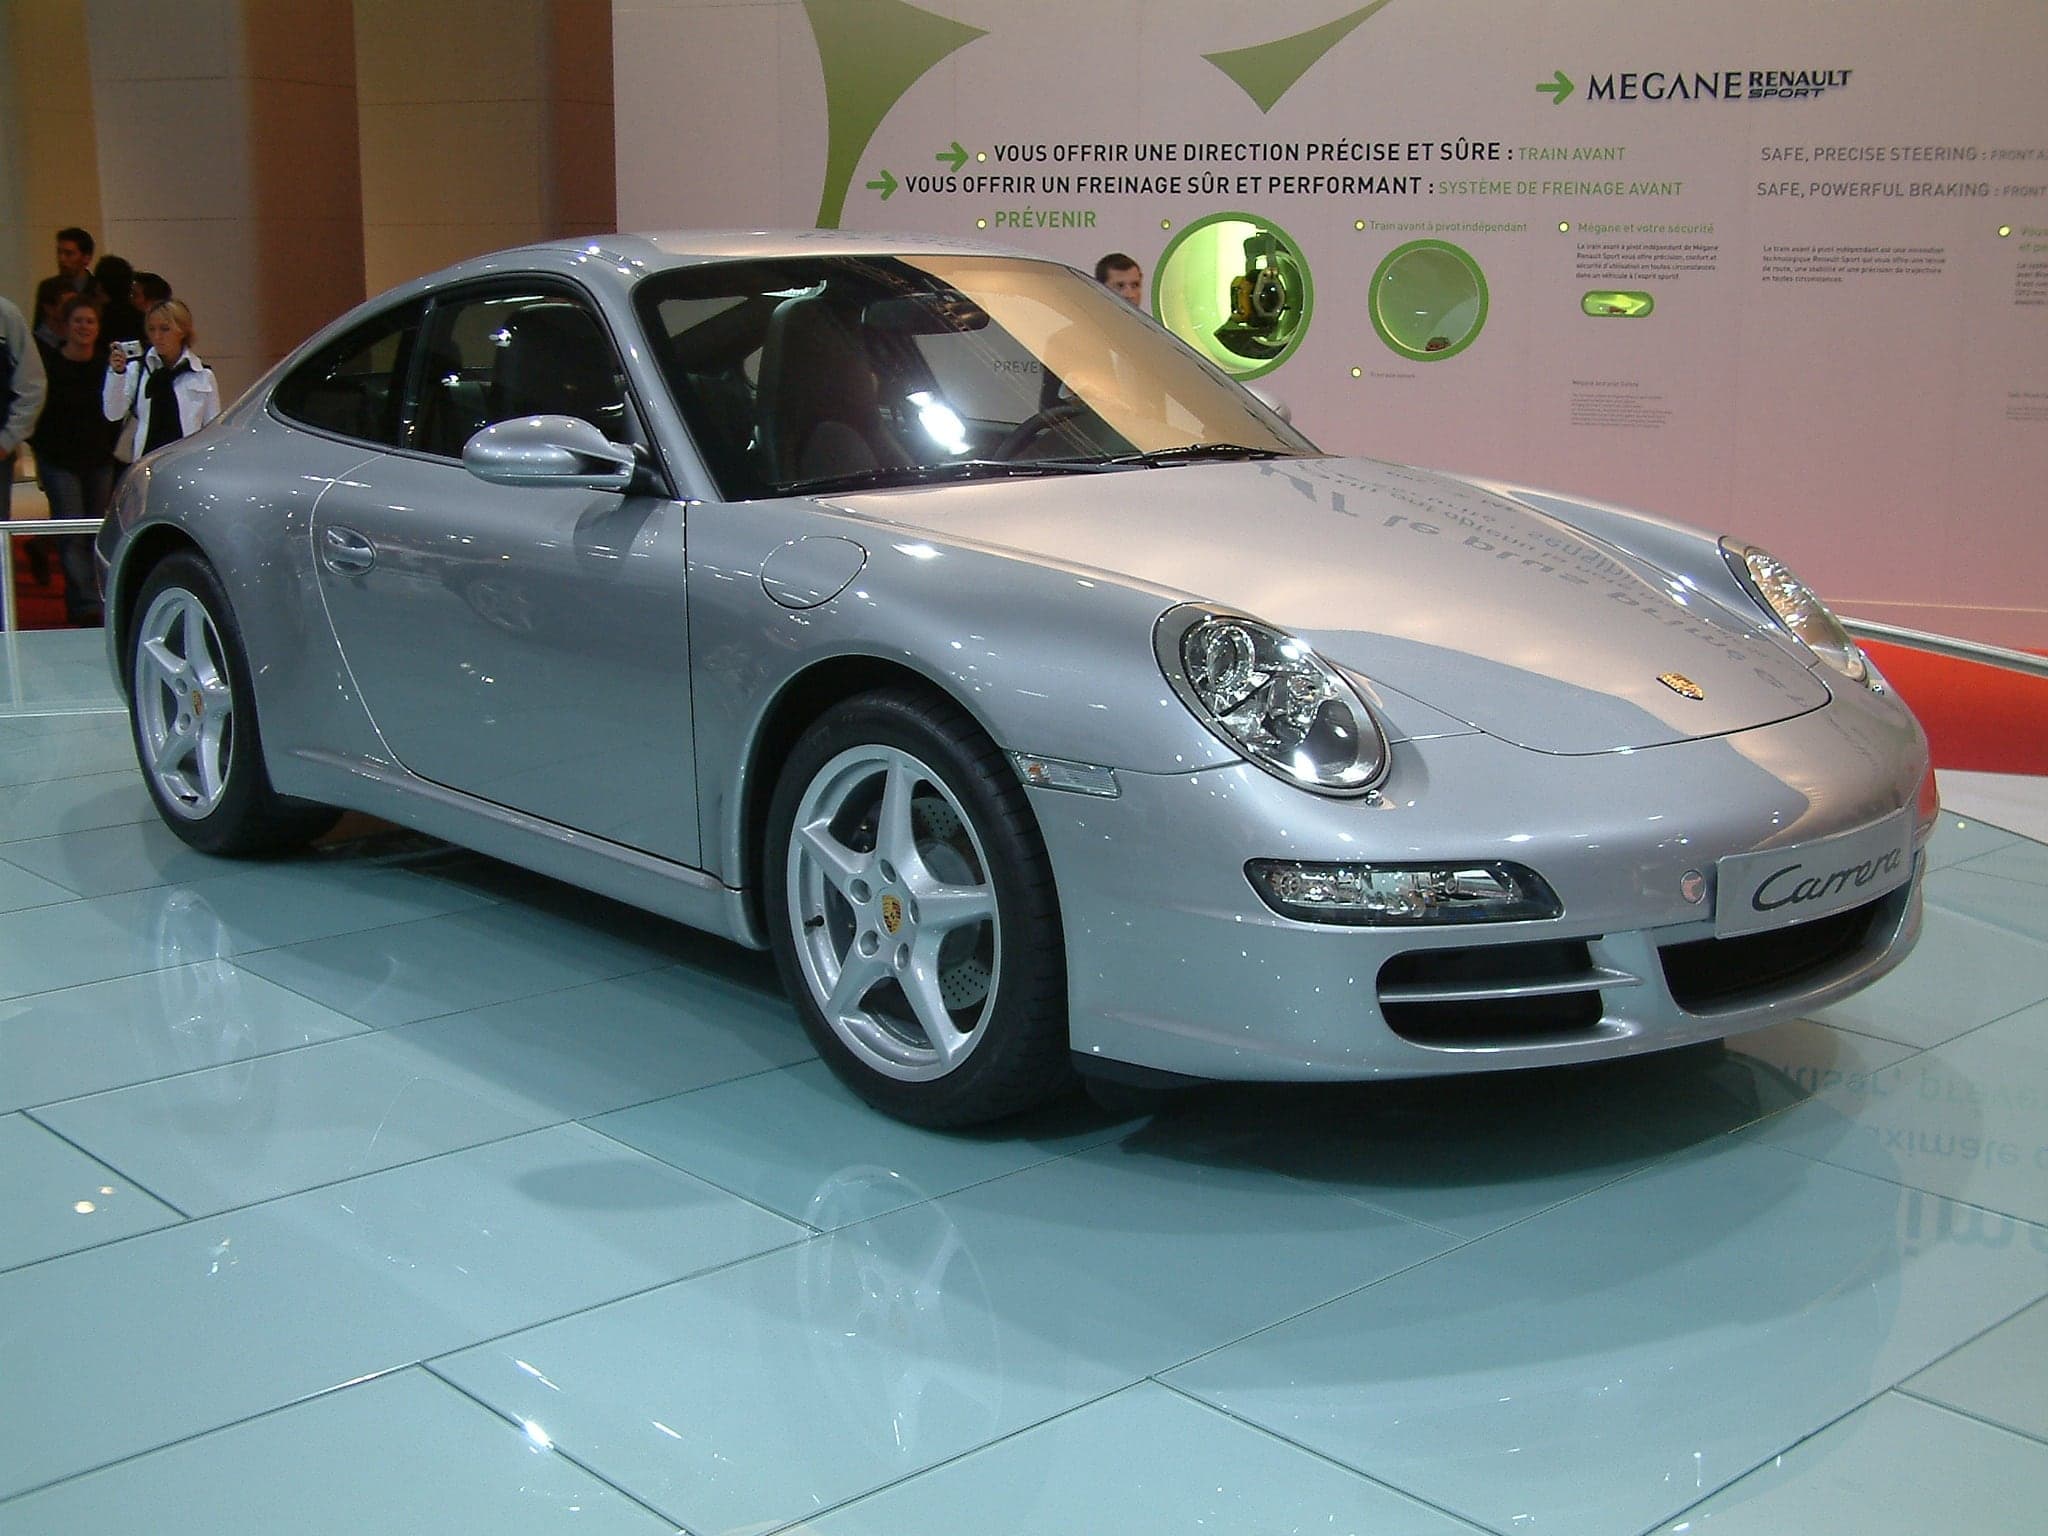 2004 silver Porsche 911 Carrera type 997 2017010516 586e7519a56ae